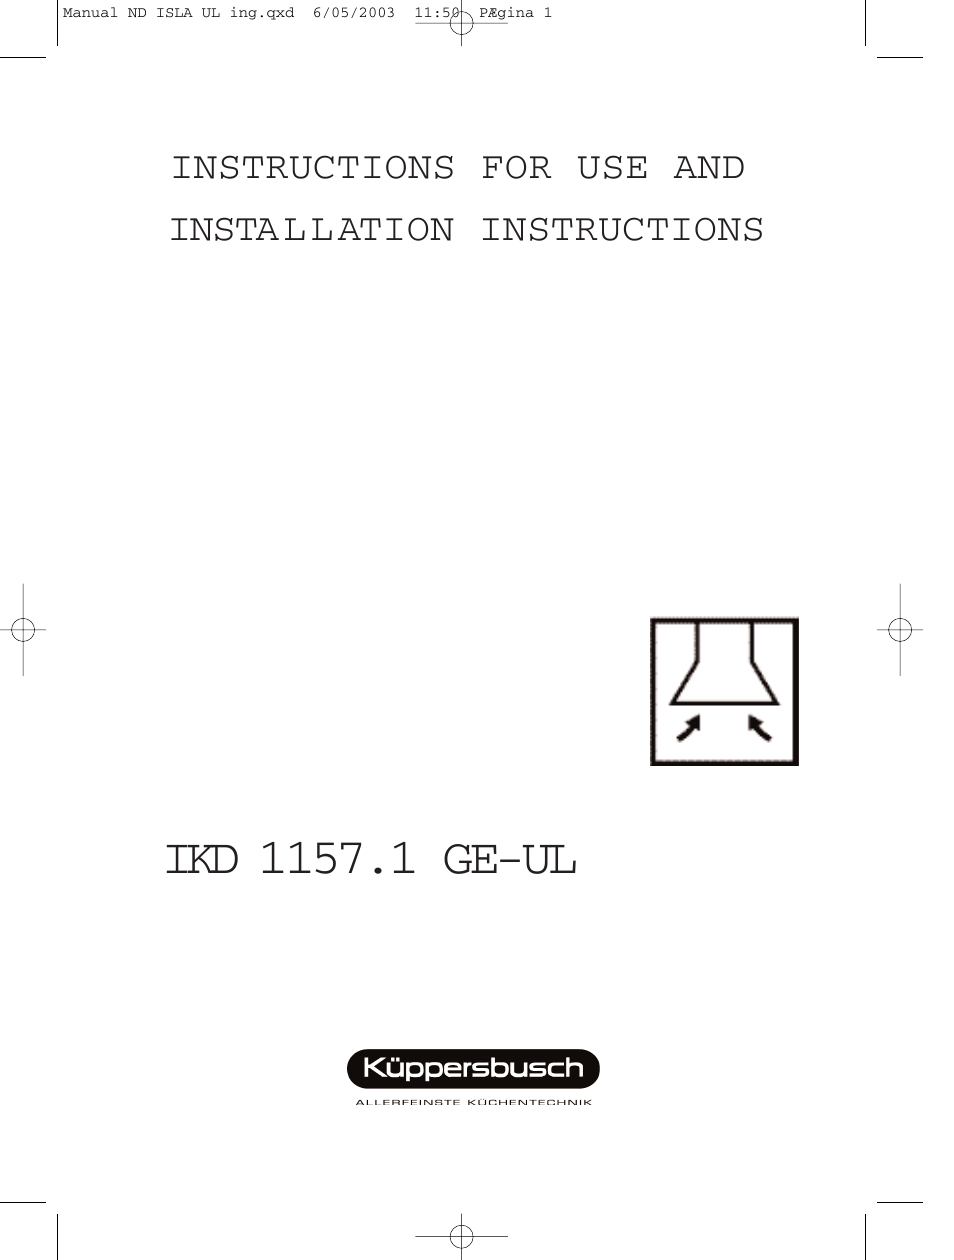 IKD 1157.1 GE-UL